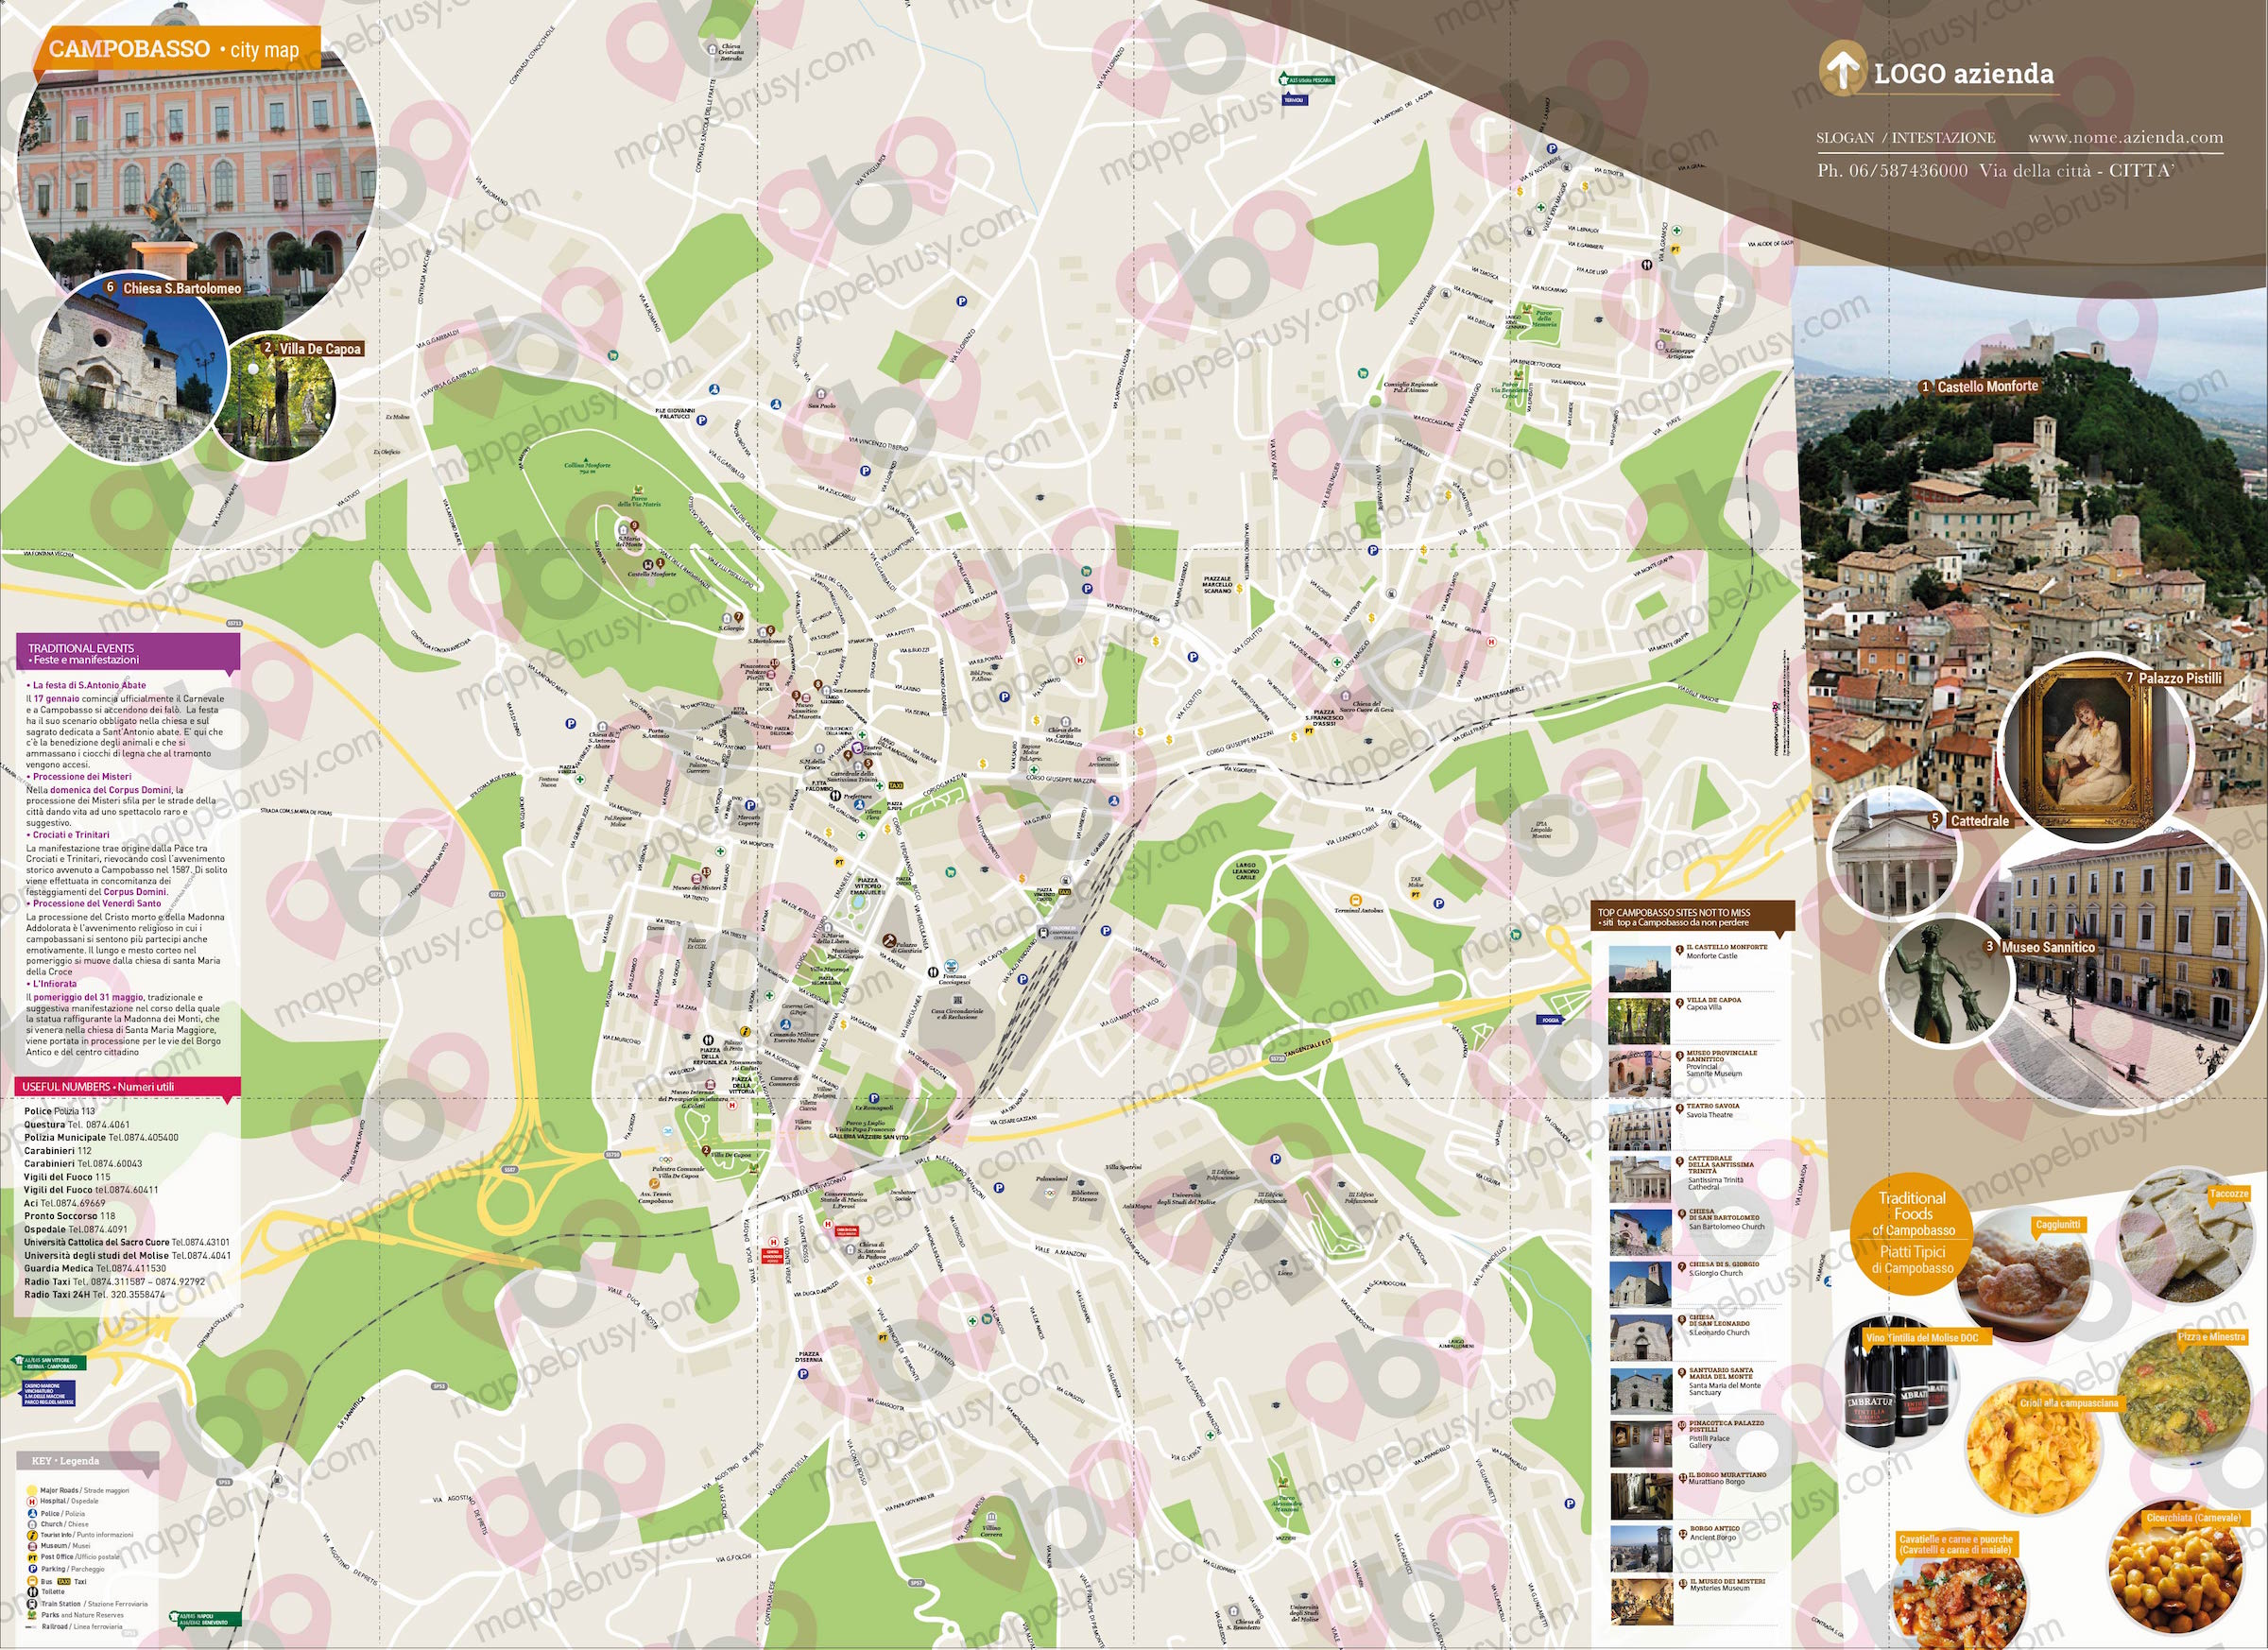 Mappa di Campobasso - Campobasso city map - mappa Campobasso - mappa personalizzata di Campobasso - mappa tursitica di Campobasso